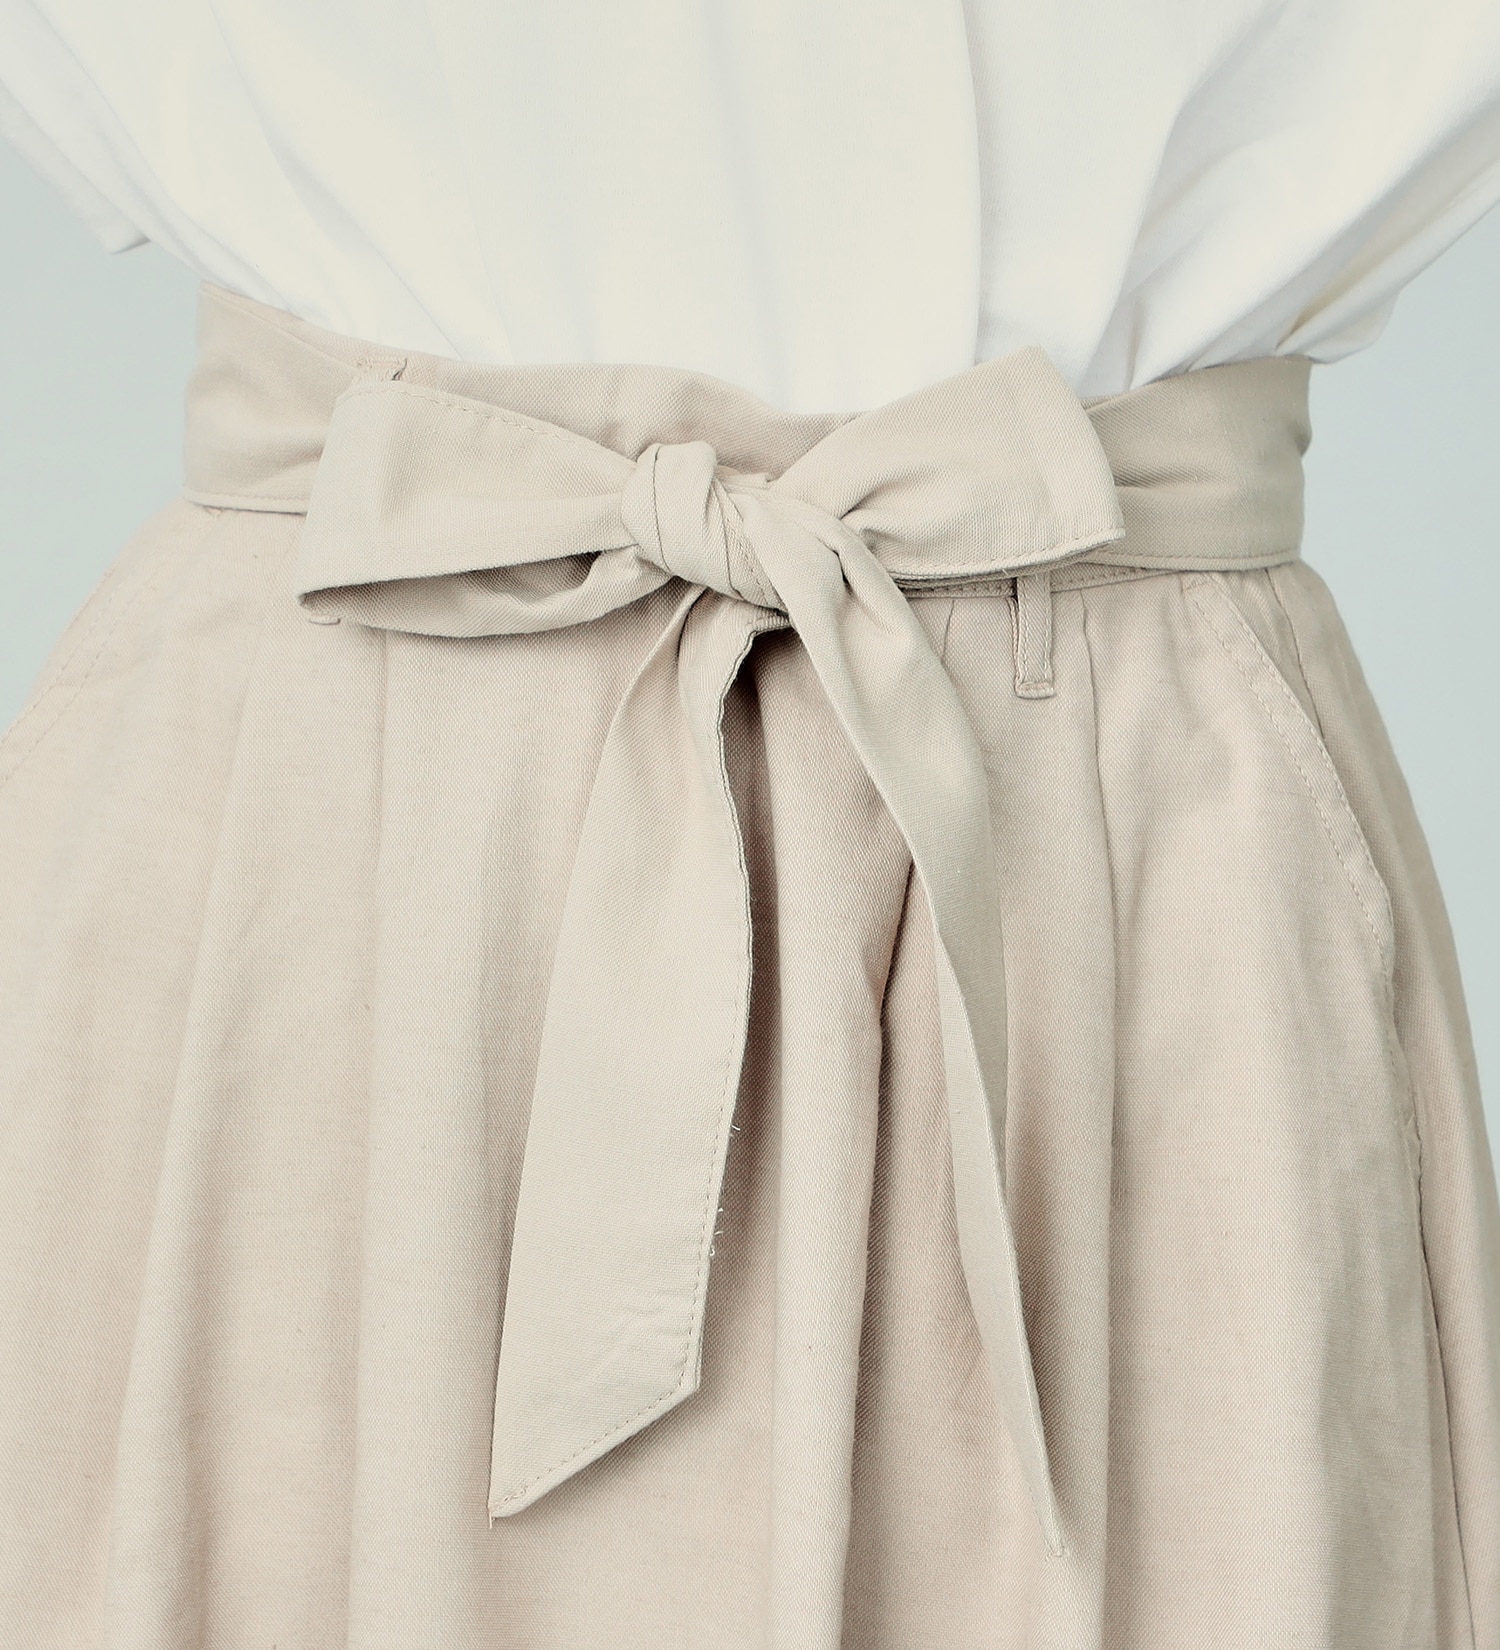 SOMETHING(サムシング)の【GW SALE】リボン付き柔らかフレアスカート【アウトレット店舗・WEB限定】|スカート/スカート/レディース|ベージュ